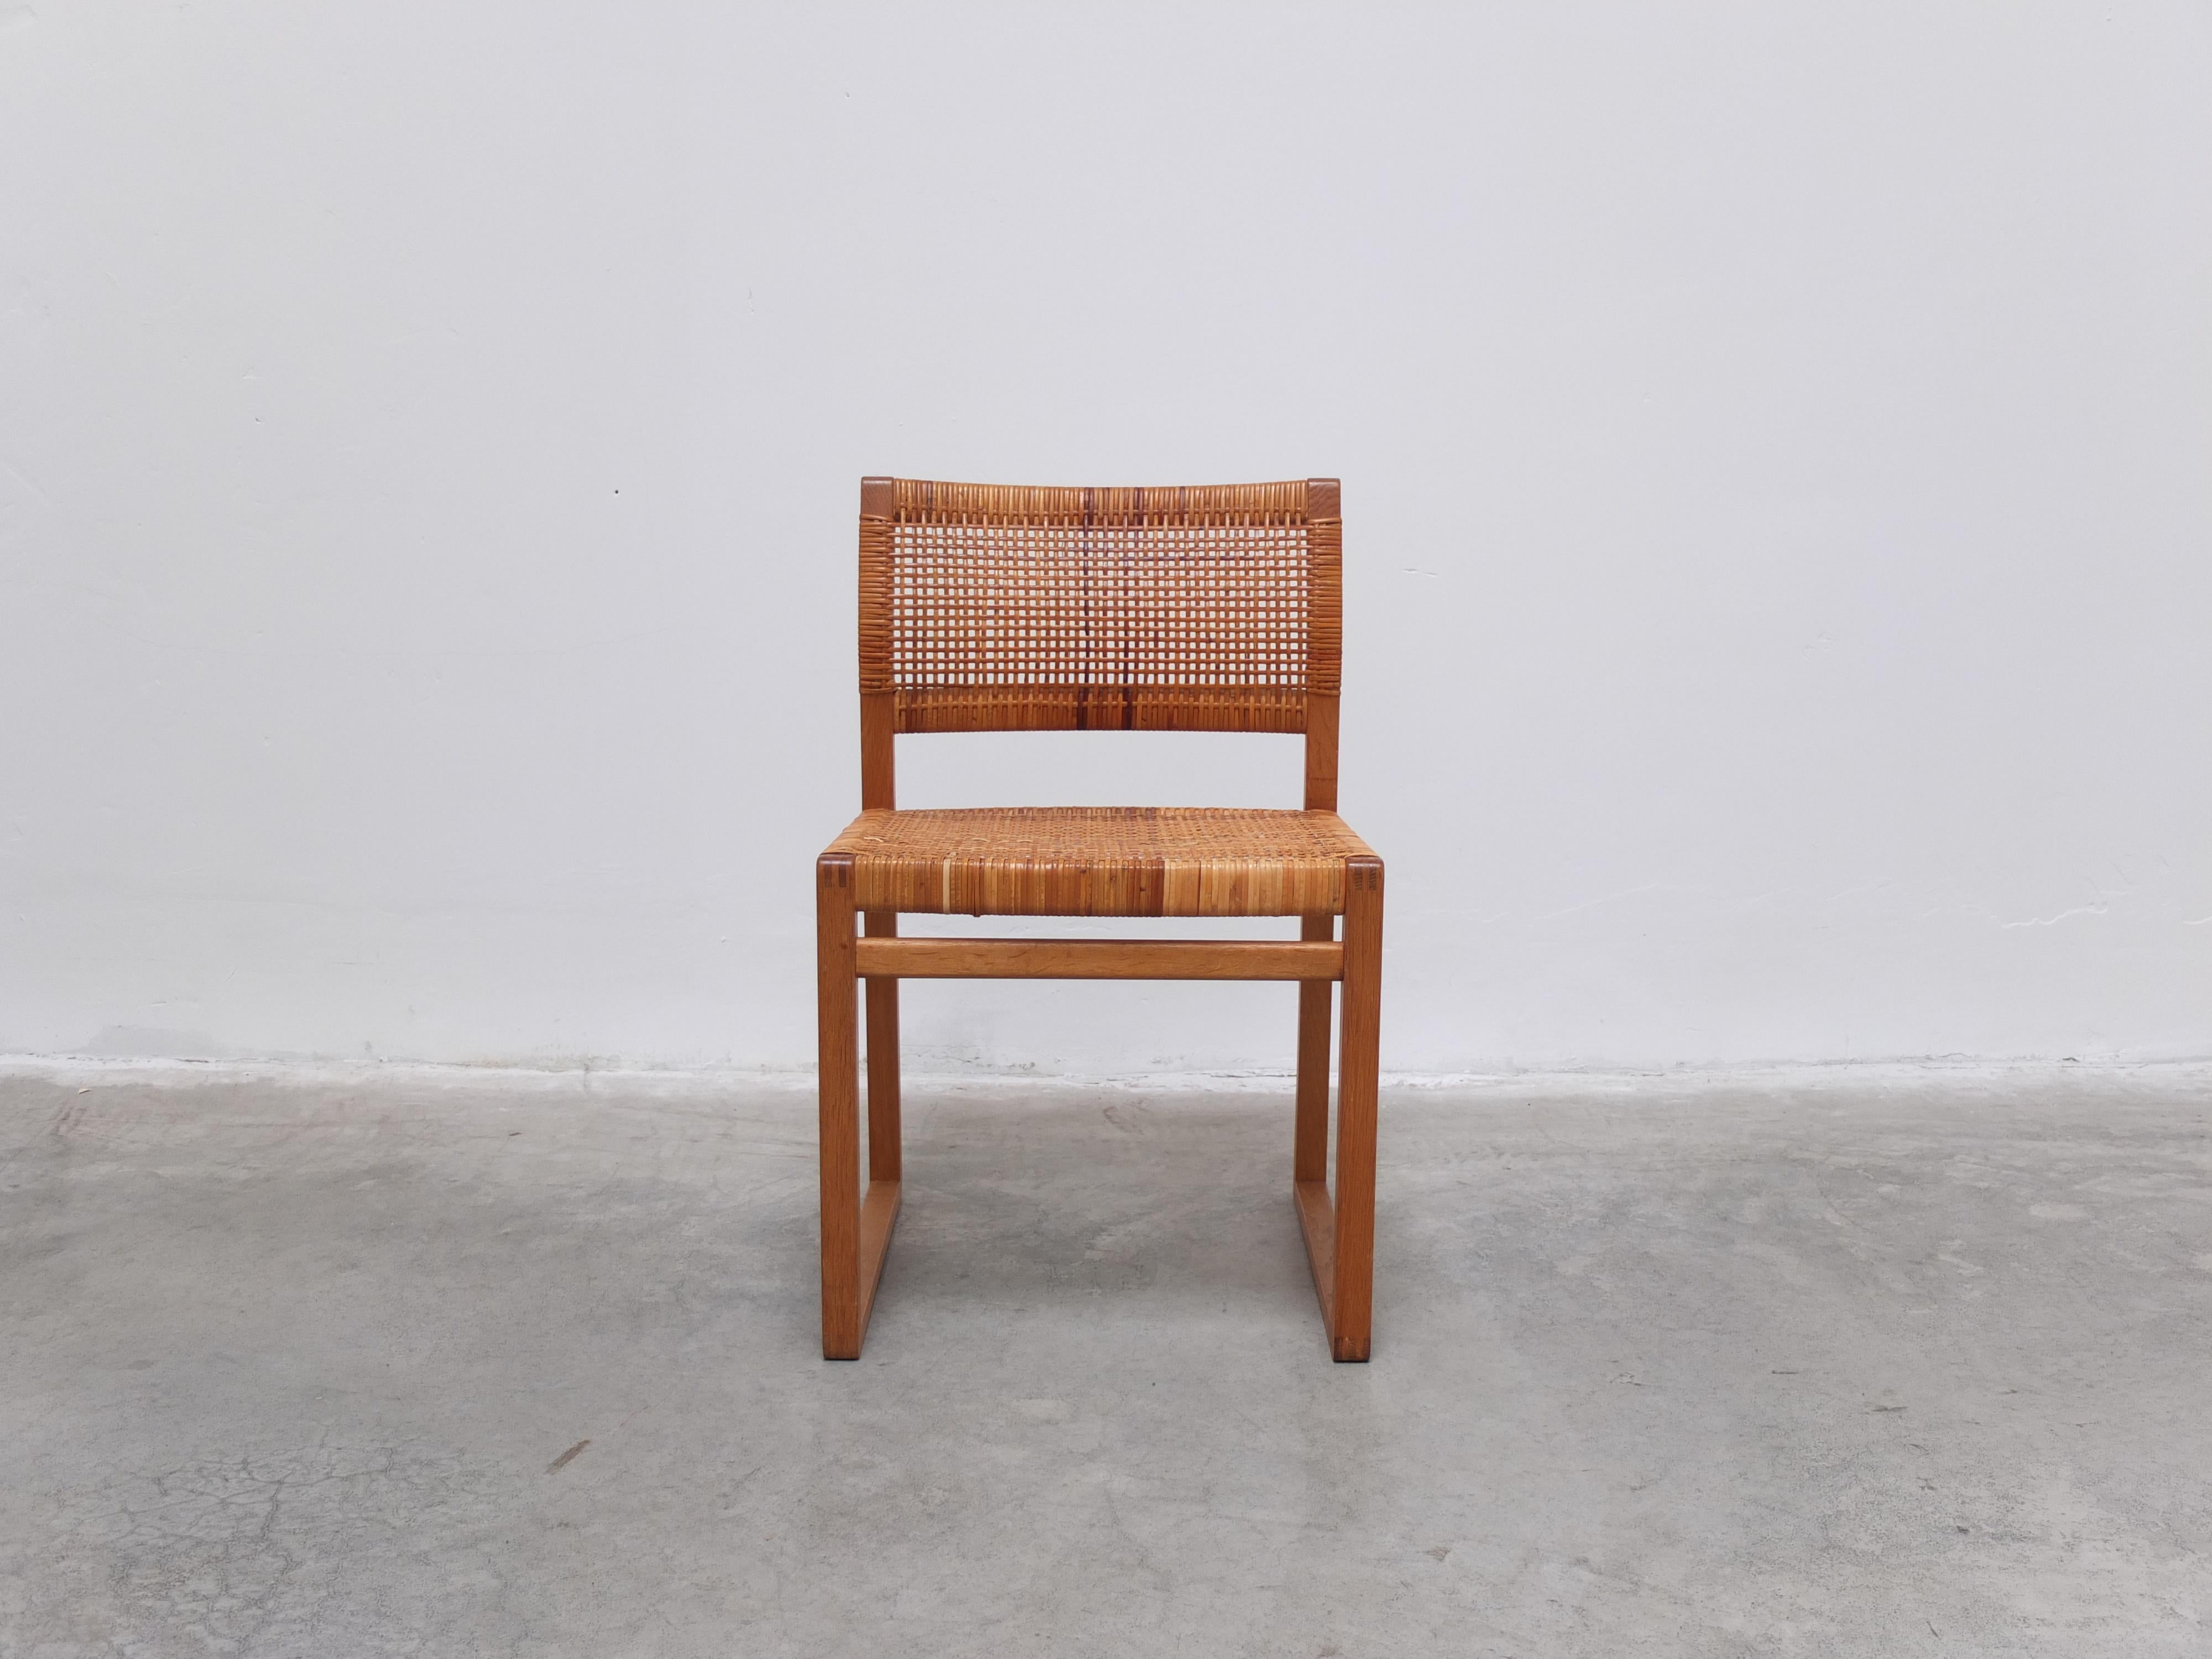 Ein sehr seltener und schöner Stuhl 'BM61', entworfen von Børge Mogensen im Jahr 1957. Hergestellt aus massiver Eiche mit schönen Details wie den sichtbaren Fugen und den Kufenfüßen. Der ursprüngliche Stock ist in gutem Zustand mit einigen kleinen